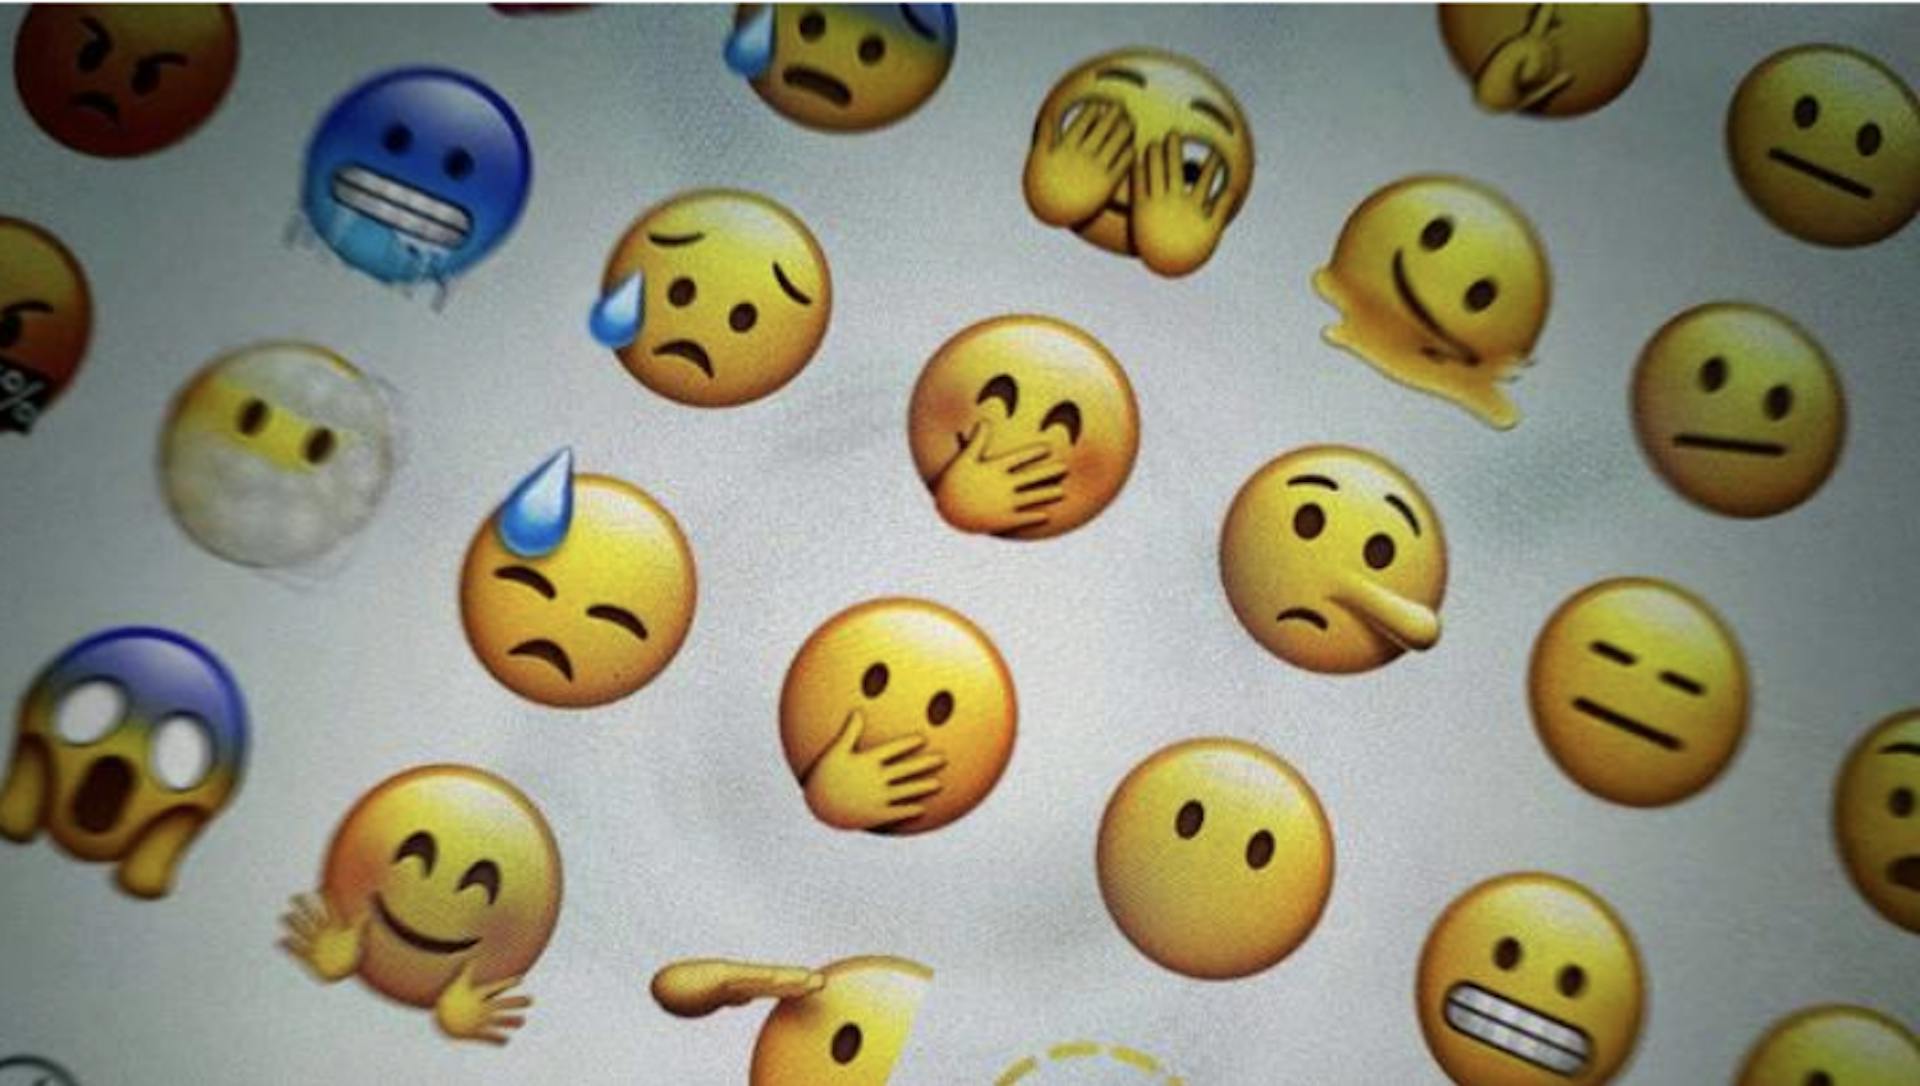 O golpista enviou um conjunto de 25 emojis NFT, em vez de obras de arte / Fonte: vm.ru